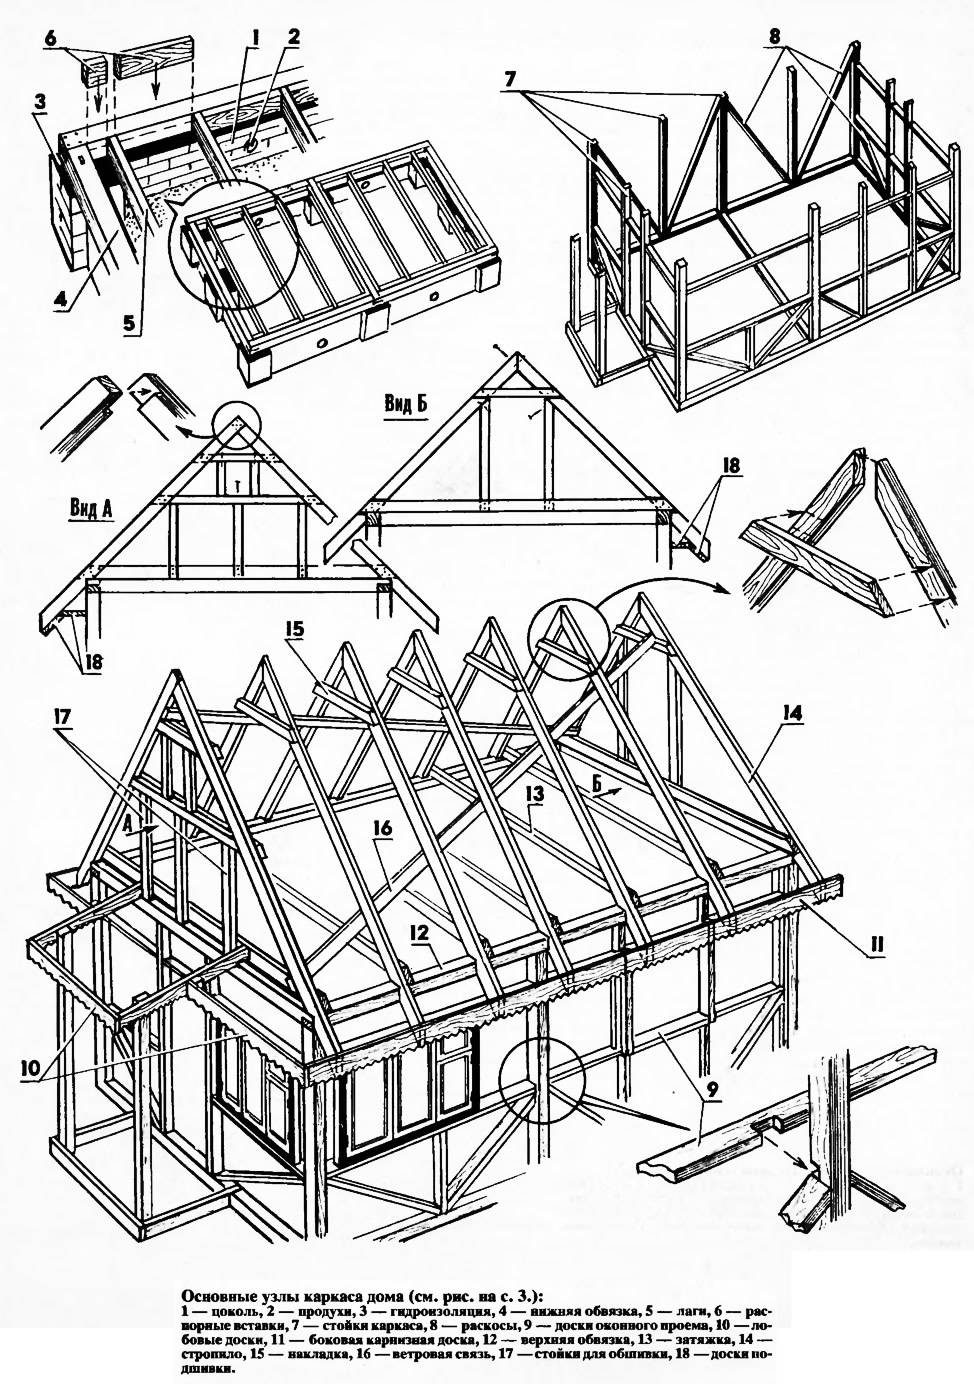 Как построить дом: выбираем участок, проект, материалы